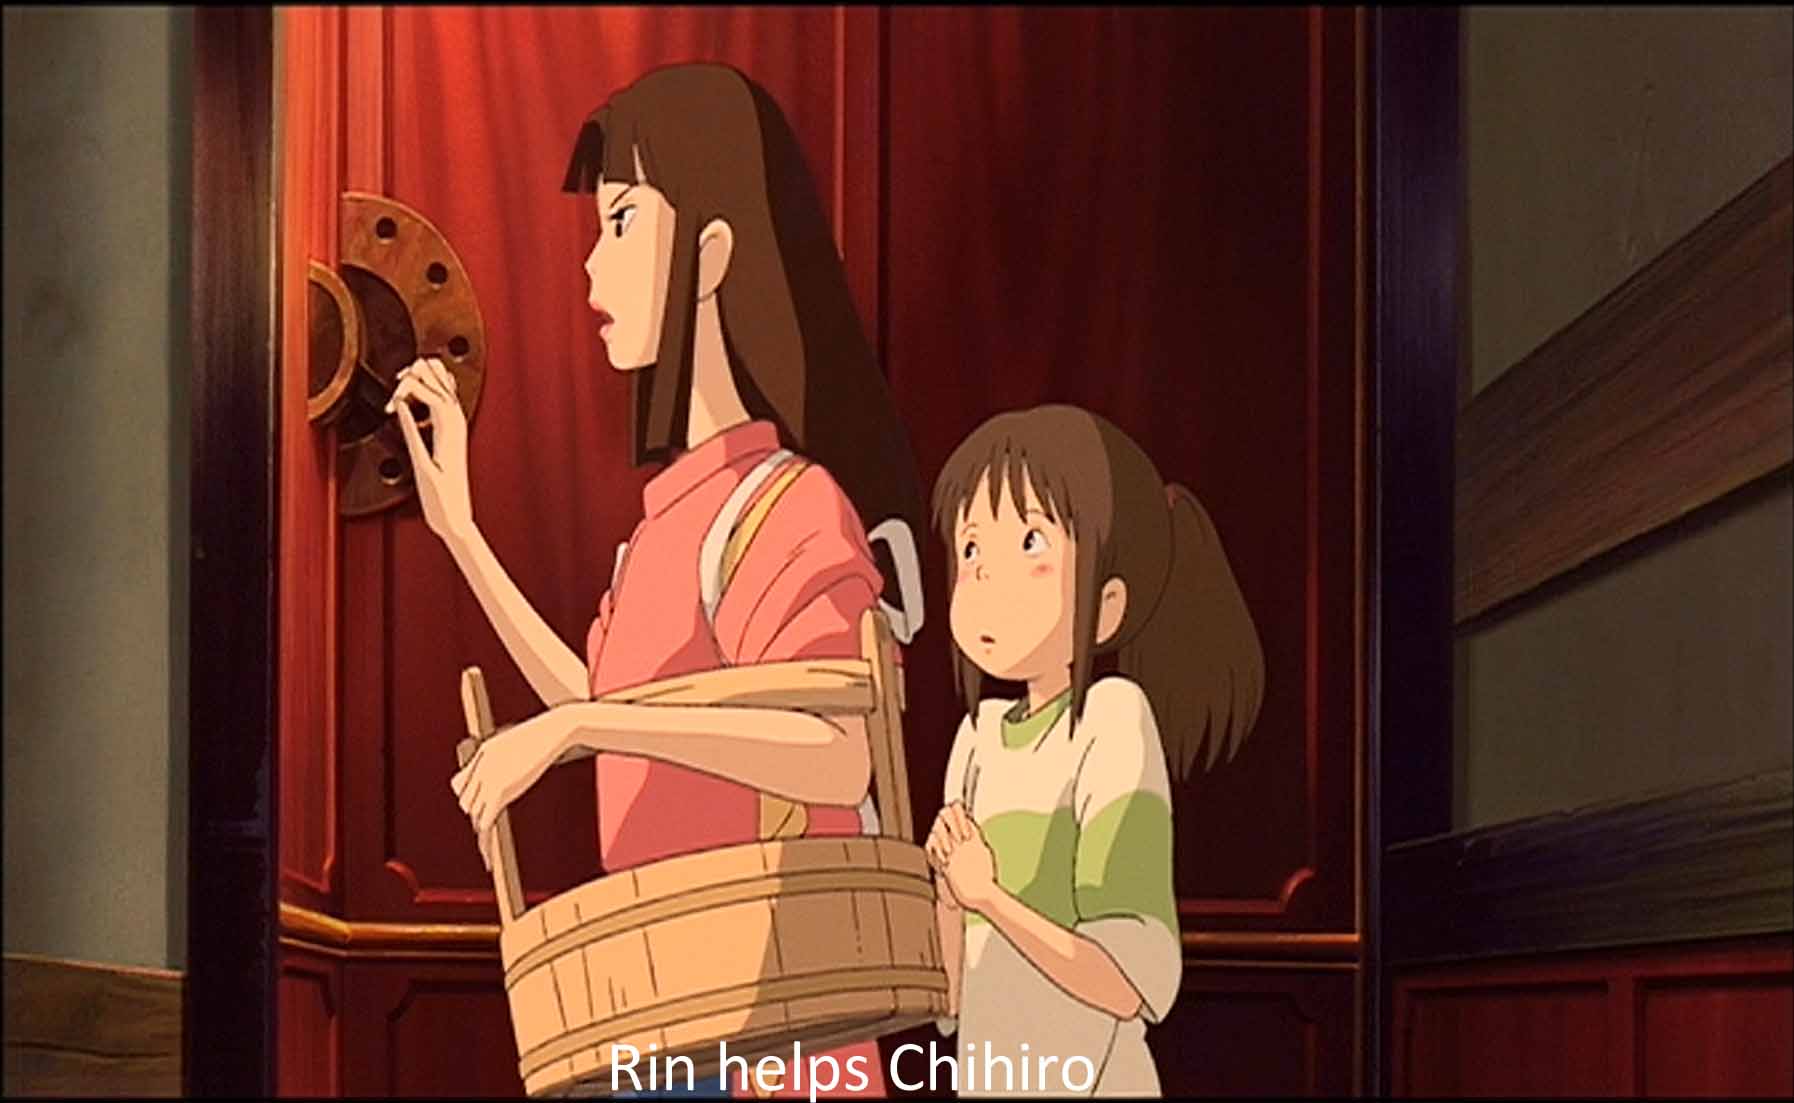 Rin helps Chihiro